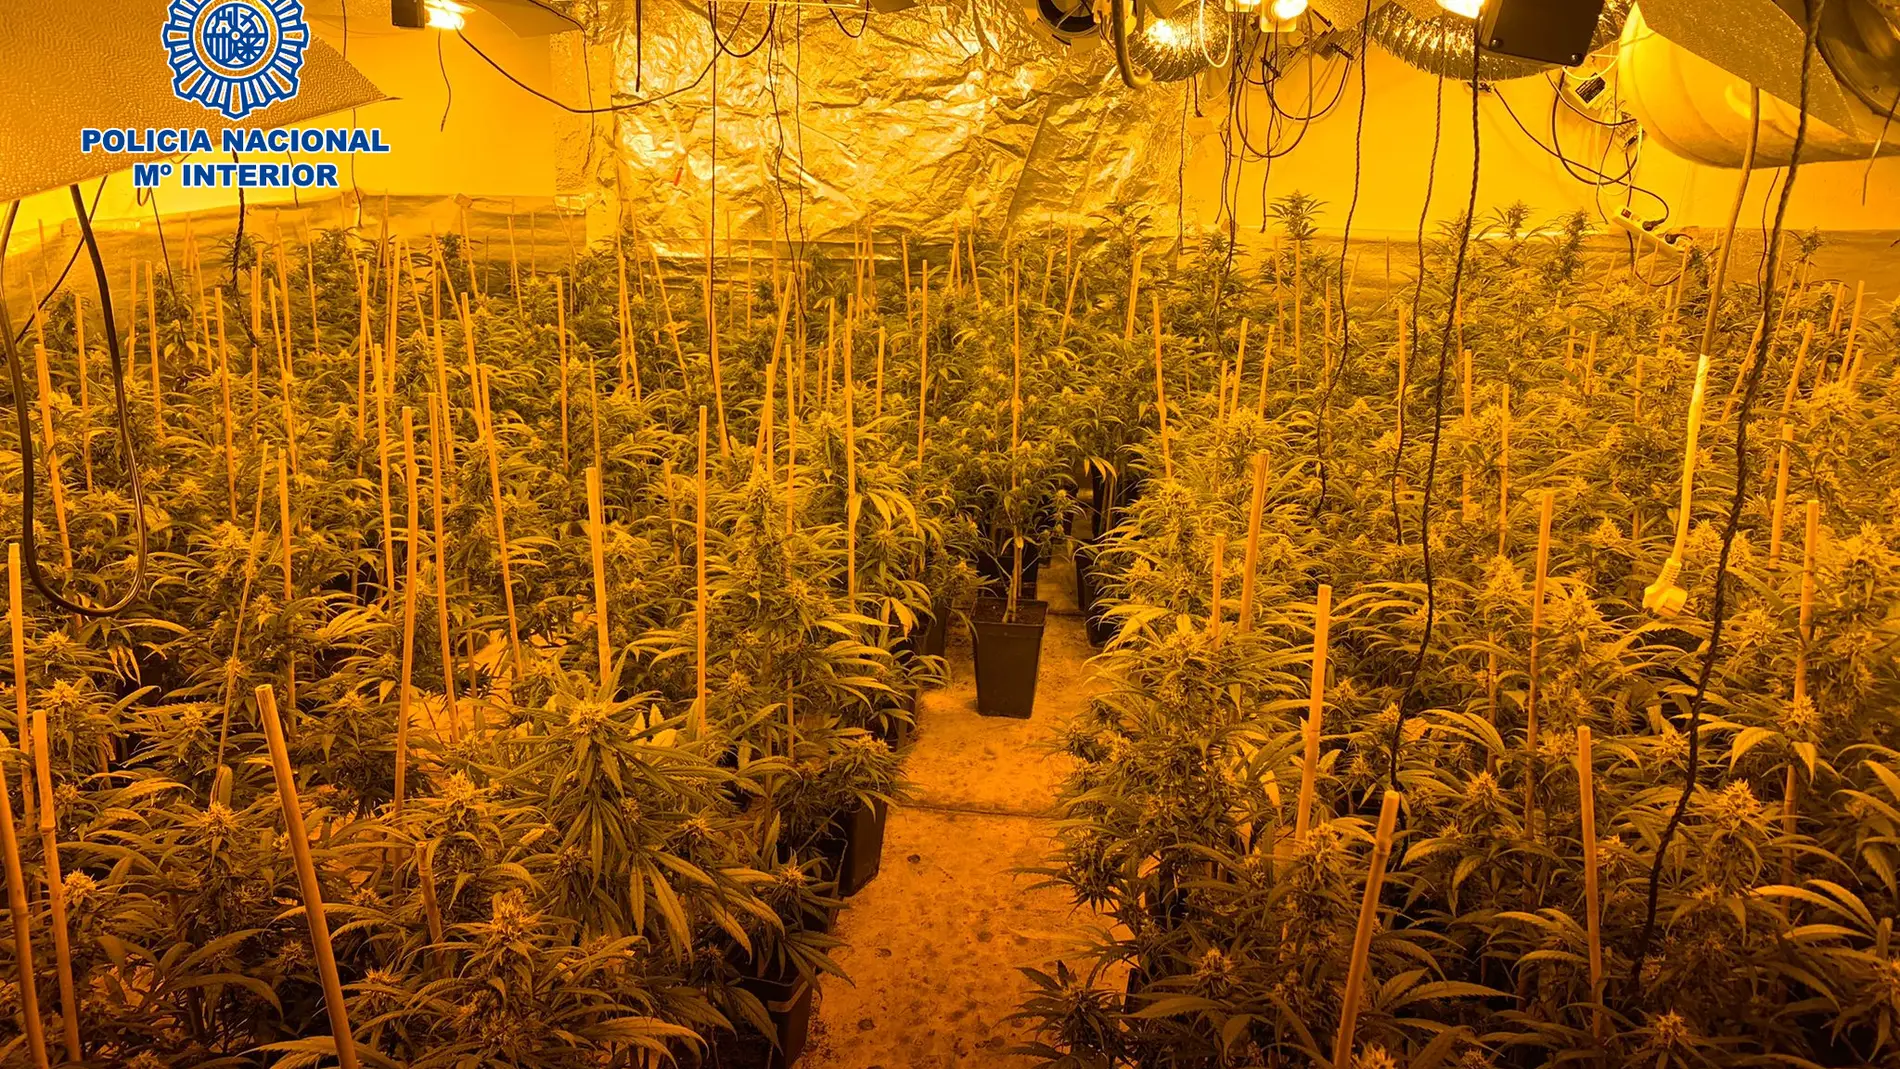 Plantación de marihuana desmantelada por la Policía Nacional (Archivo)